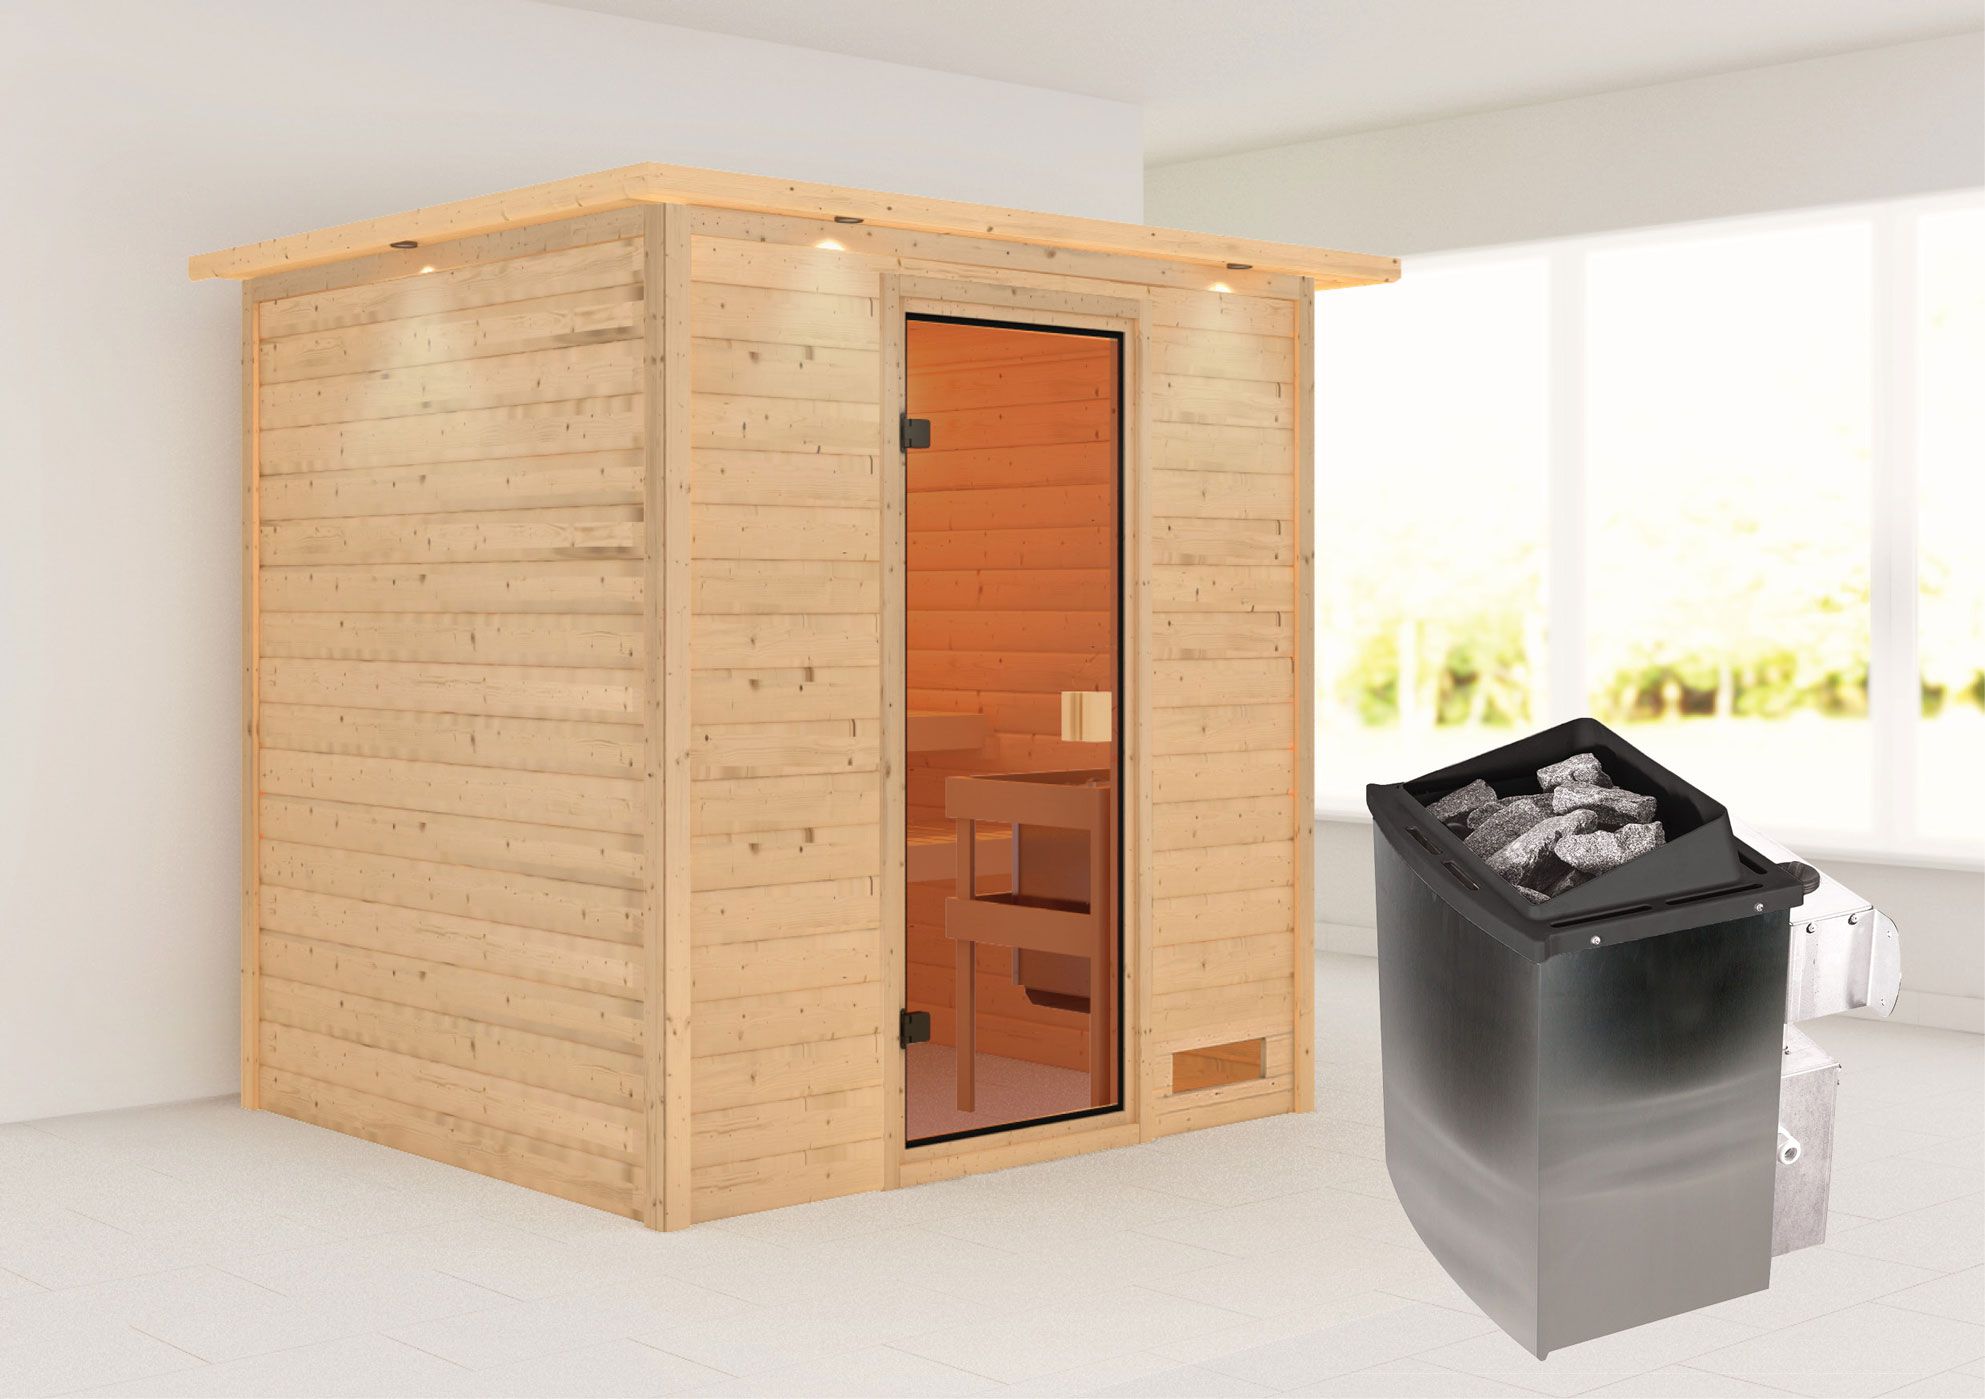 Sauna "Laerke" SET AKTION mit bronzierter Tür, Kranz & Ofen 9 kW - 224 x 184 x 202 cm (B x T x H)